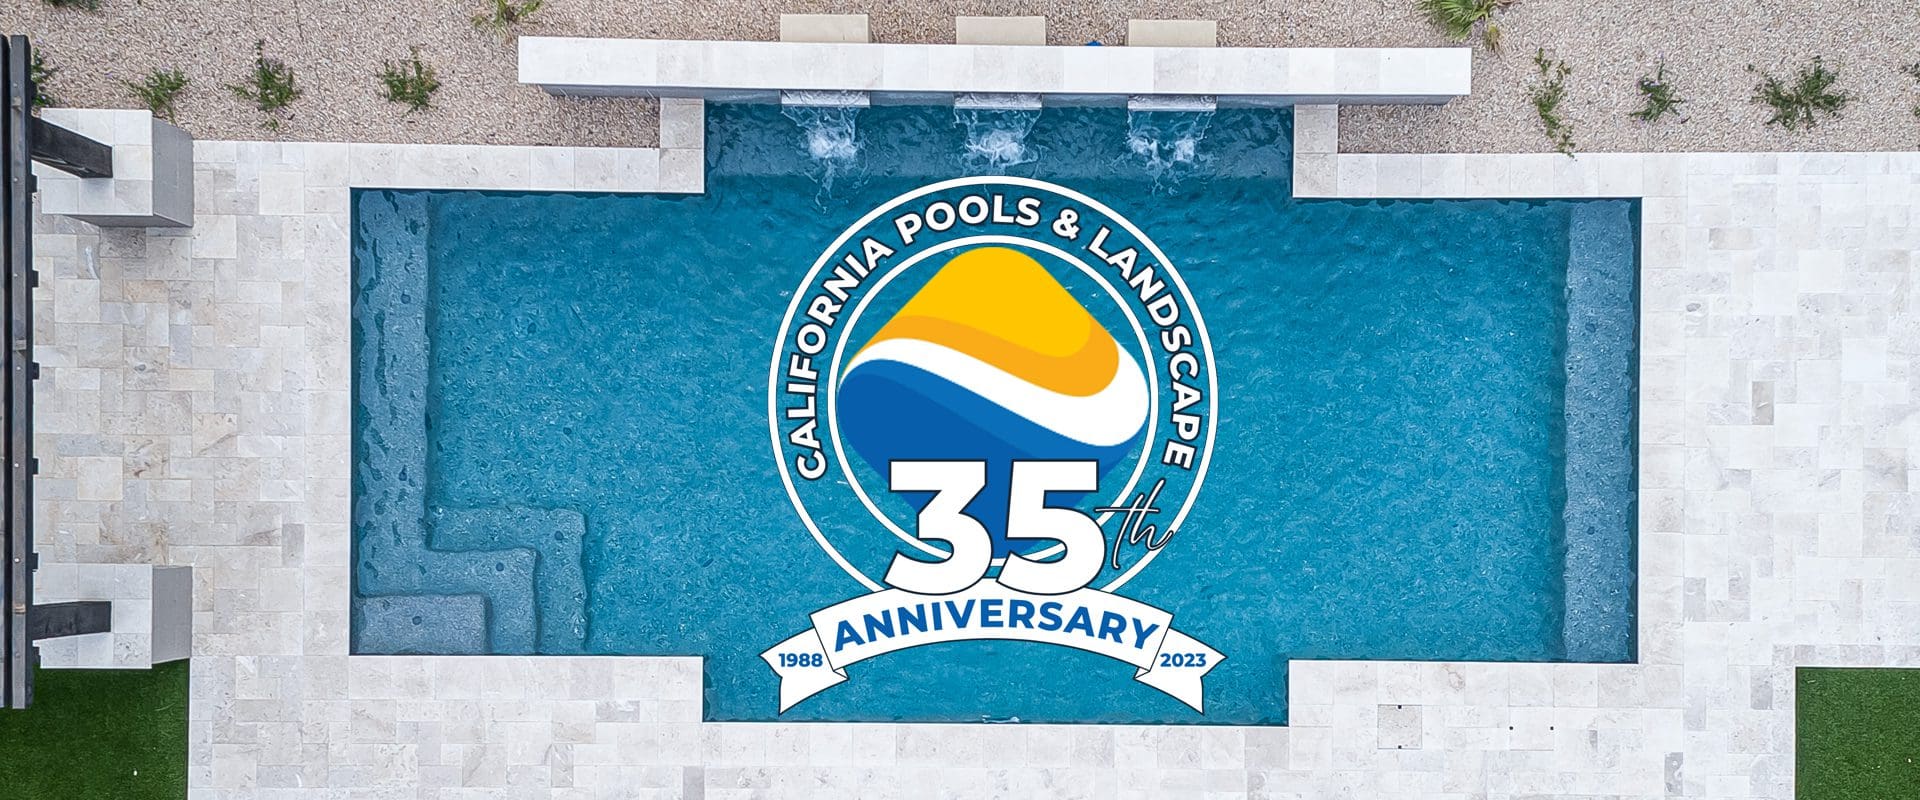 California Pools & Landscape Celebrates 35th Anniversary